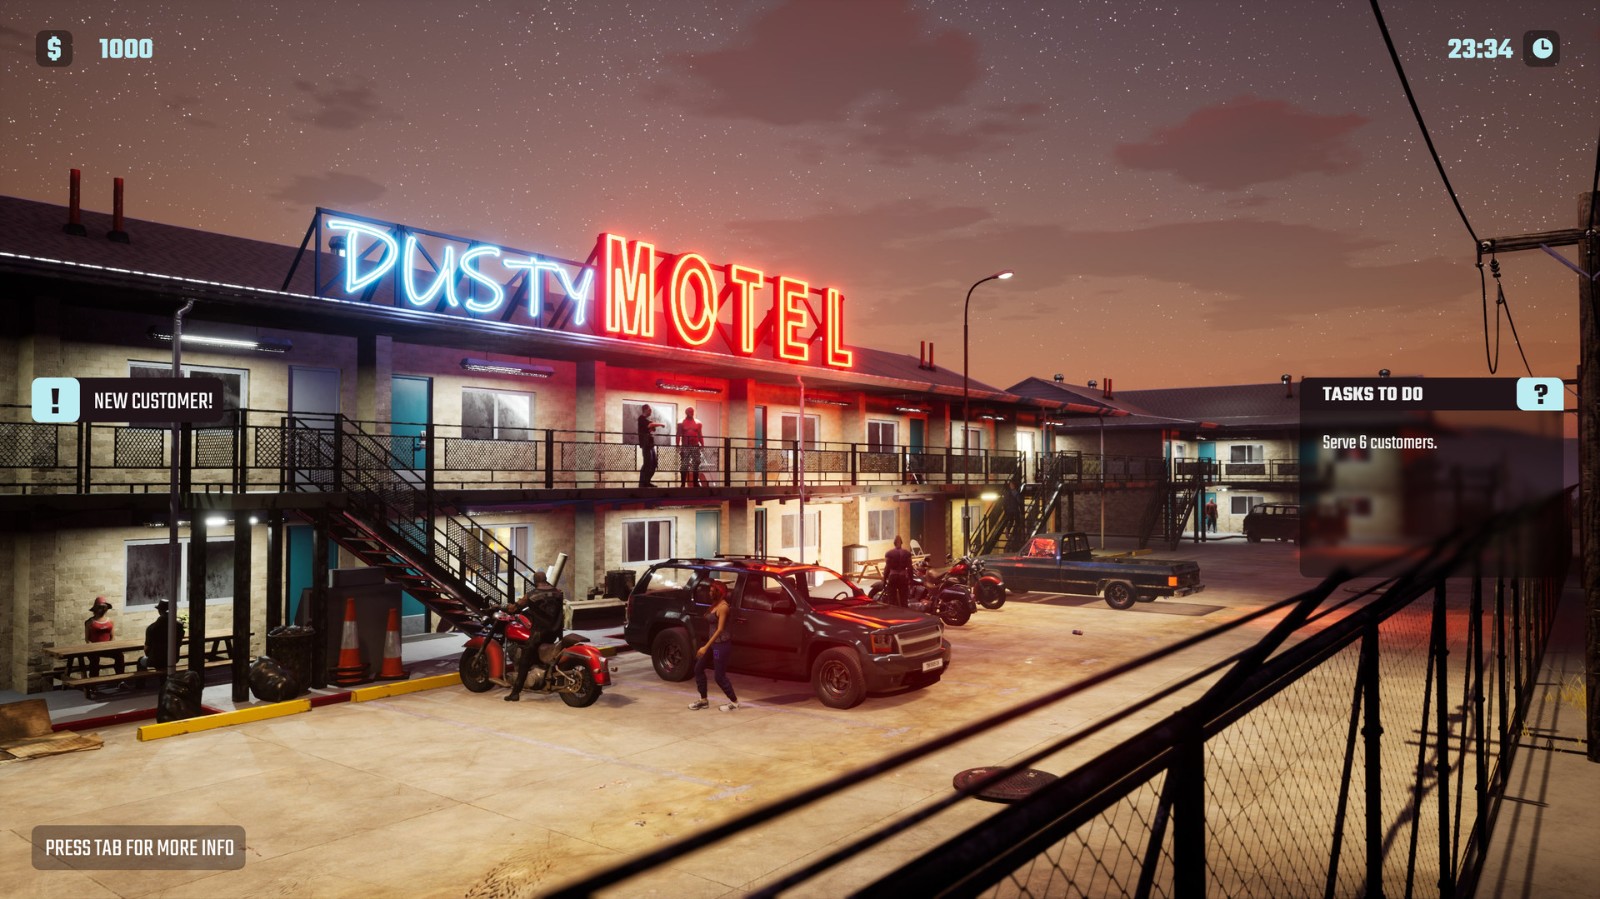 趣味模拟游戏《汽车旅馆模拟器》正式上架Steam 你必须在有限的旅馆空间内作出选择